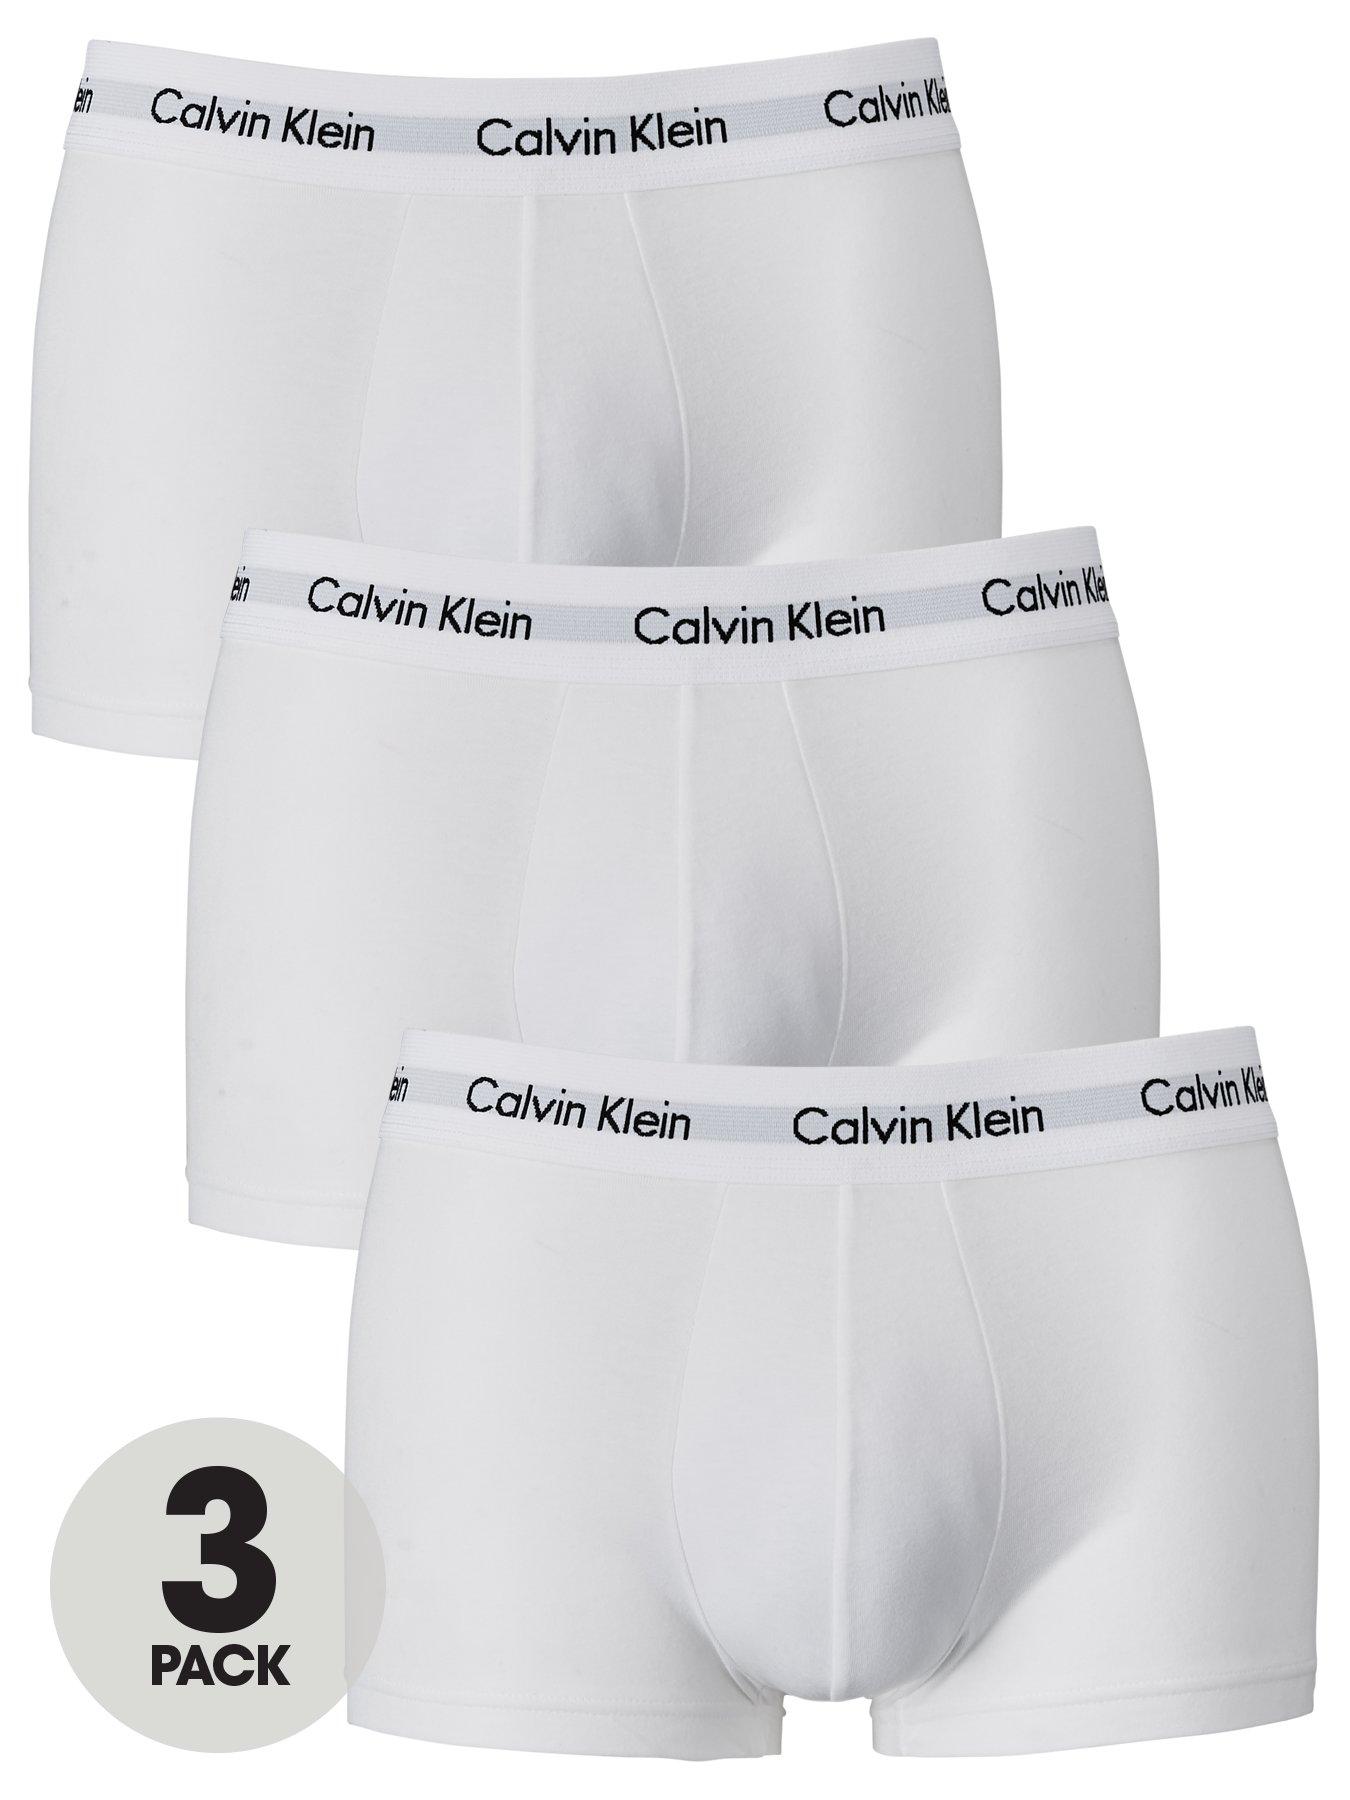 Examples of Calvin Klein serial numbers